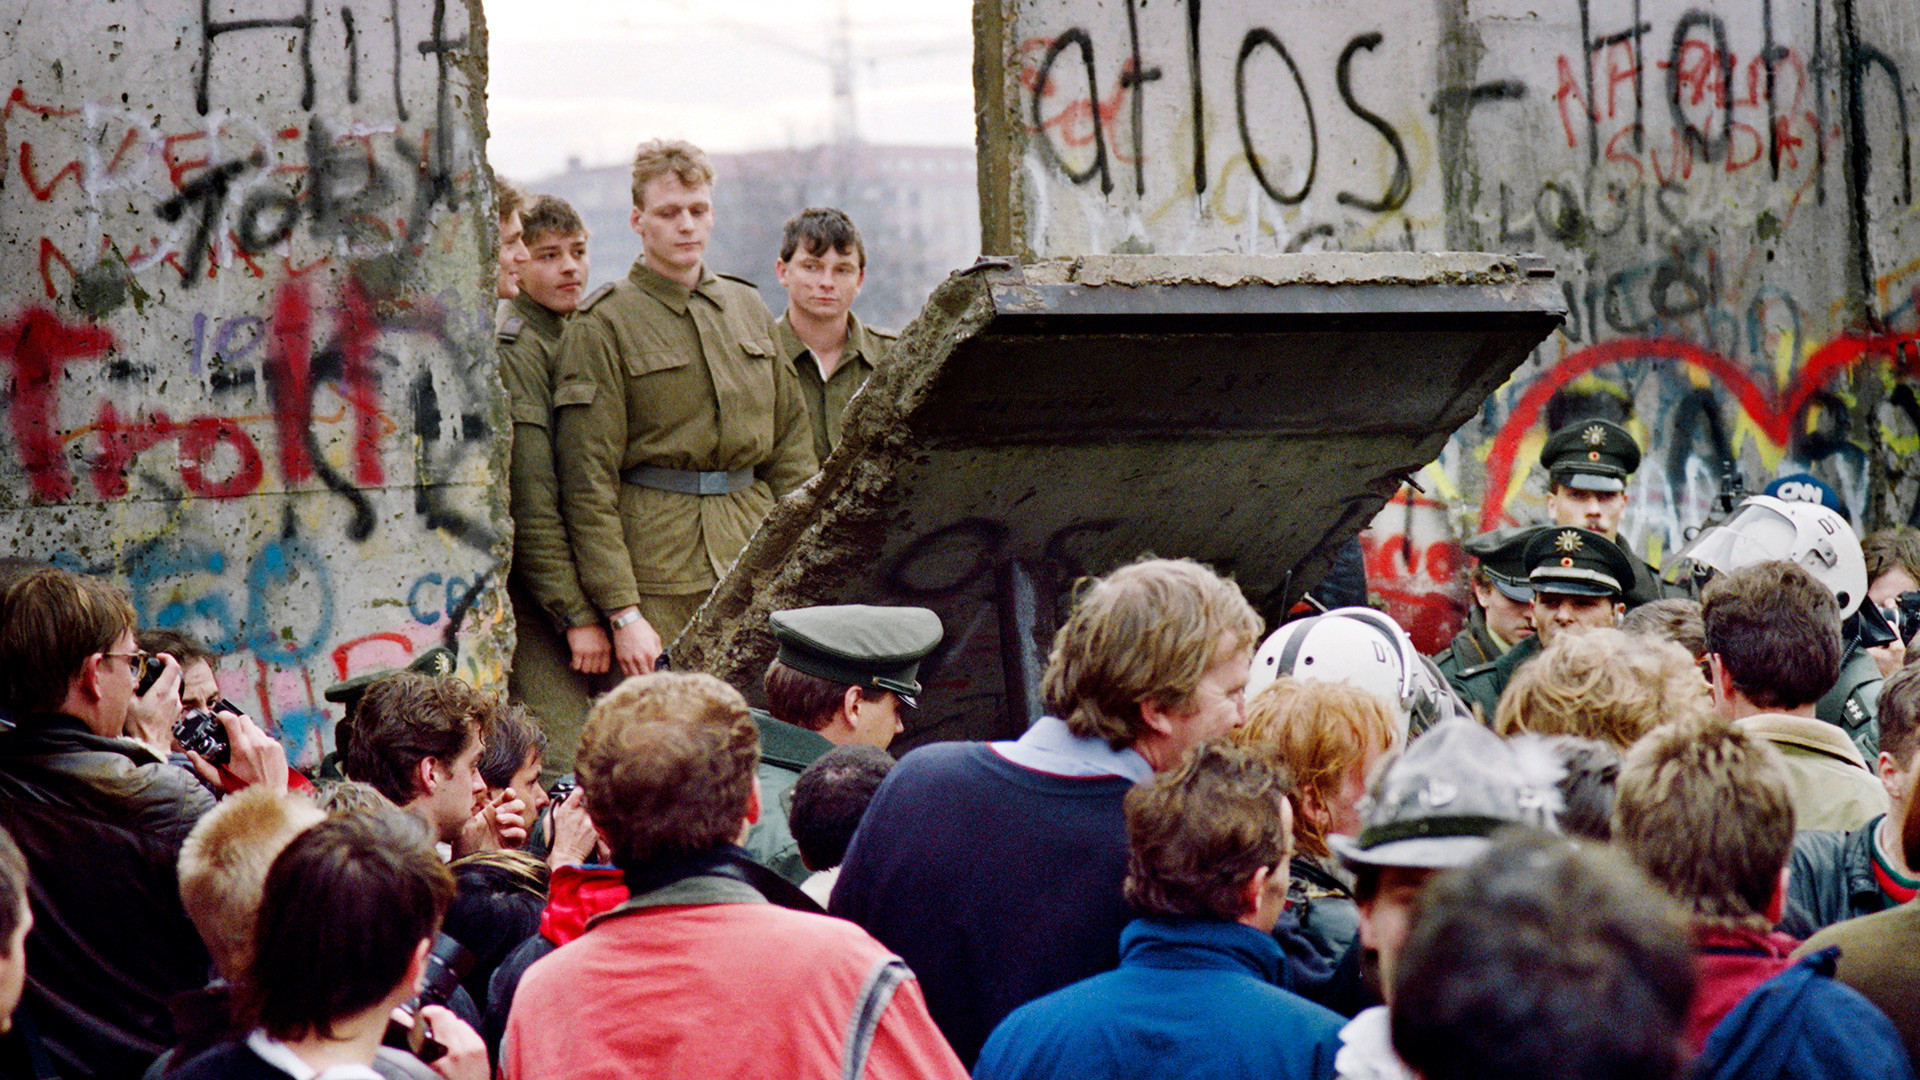 Грађани Западног Берлина испред Берлинског зида 11. новембра 1989. посматрају како источнонемачки граничари руше део Берлинског зида како би направили нови гранични прелаз близу Постдамског трга. Два дана раније је Гинтер Шабовски изјавио да ће источни Немци од поноћи моћи слободно да напусте земљу.